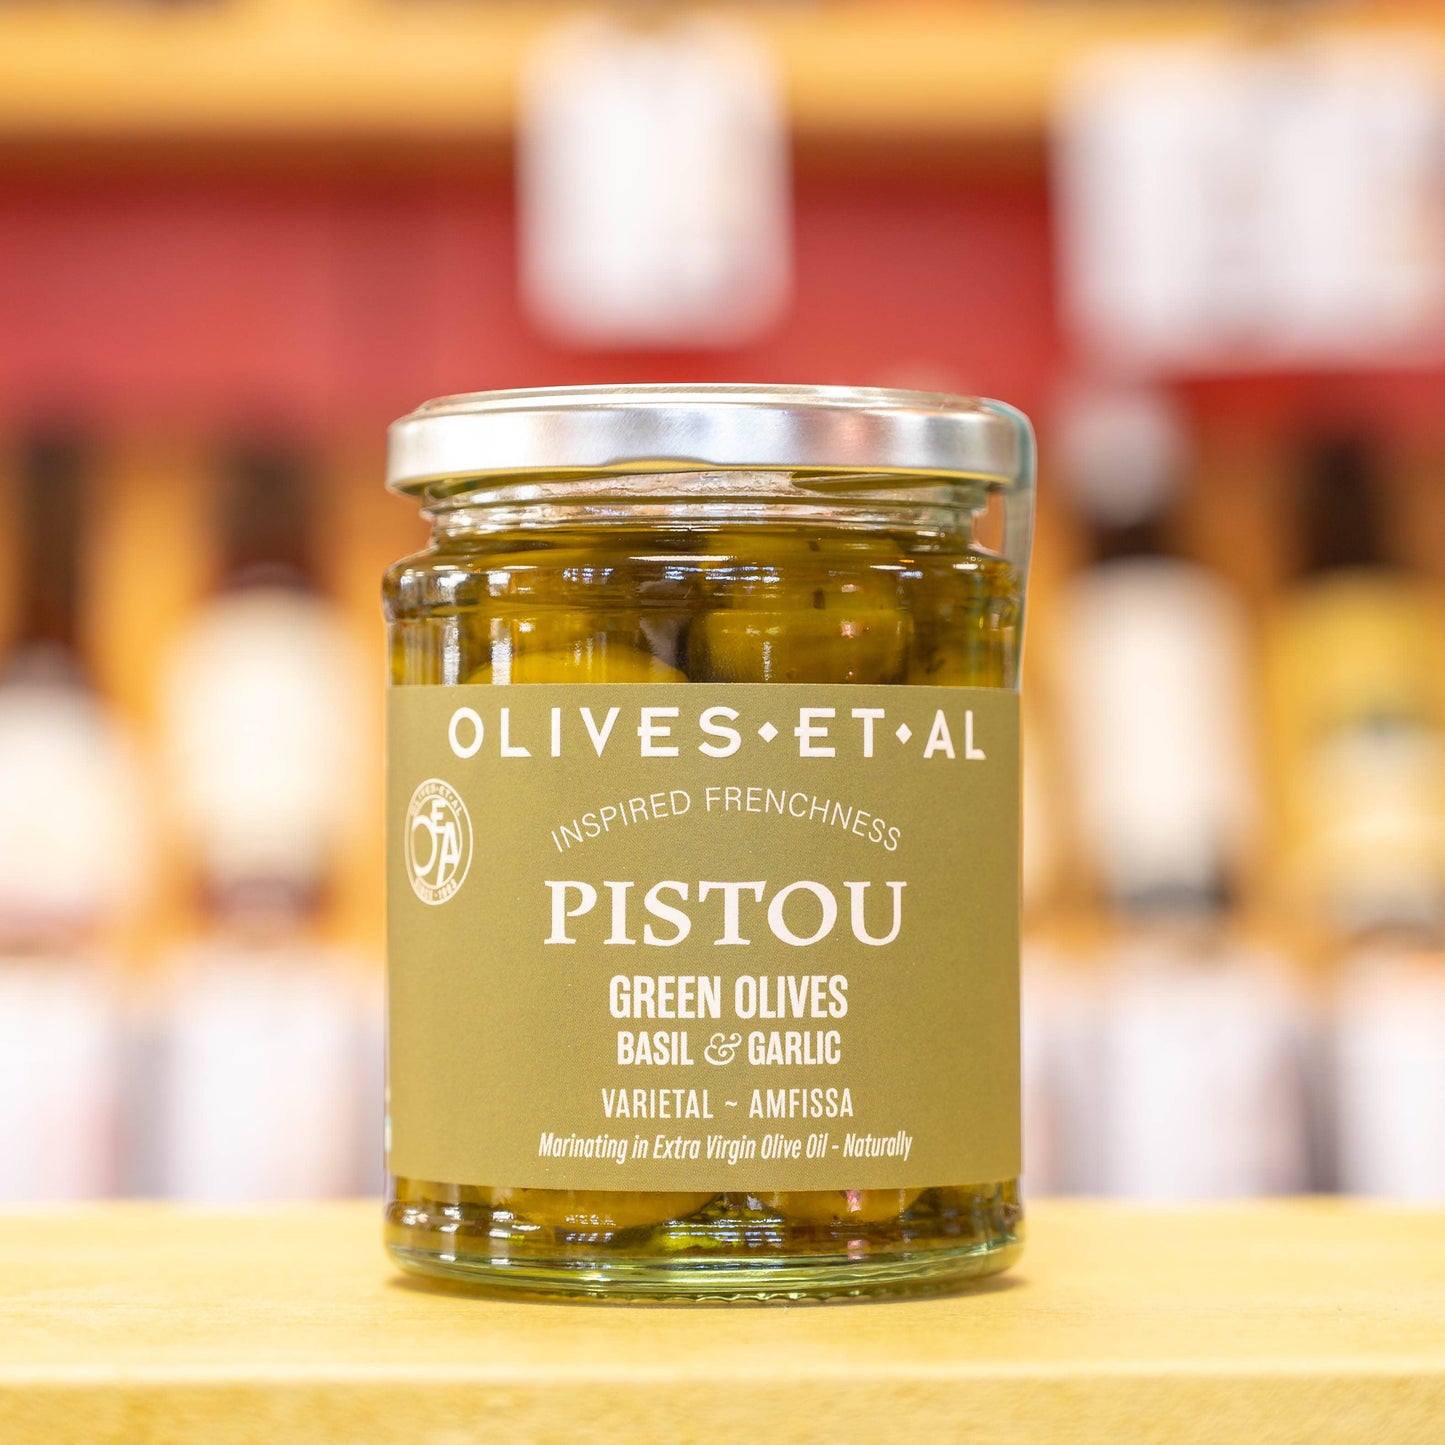 Pistou Basil & Garlic Whole Olives